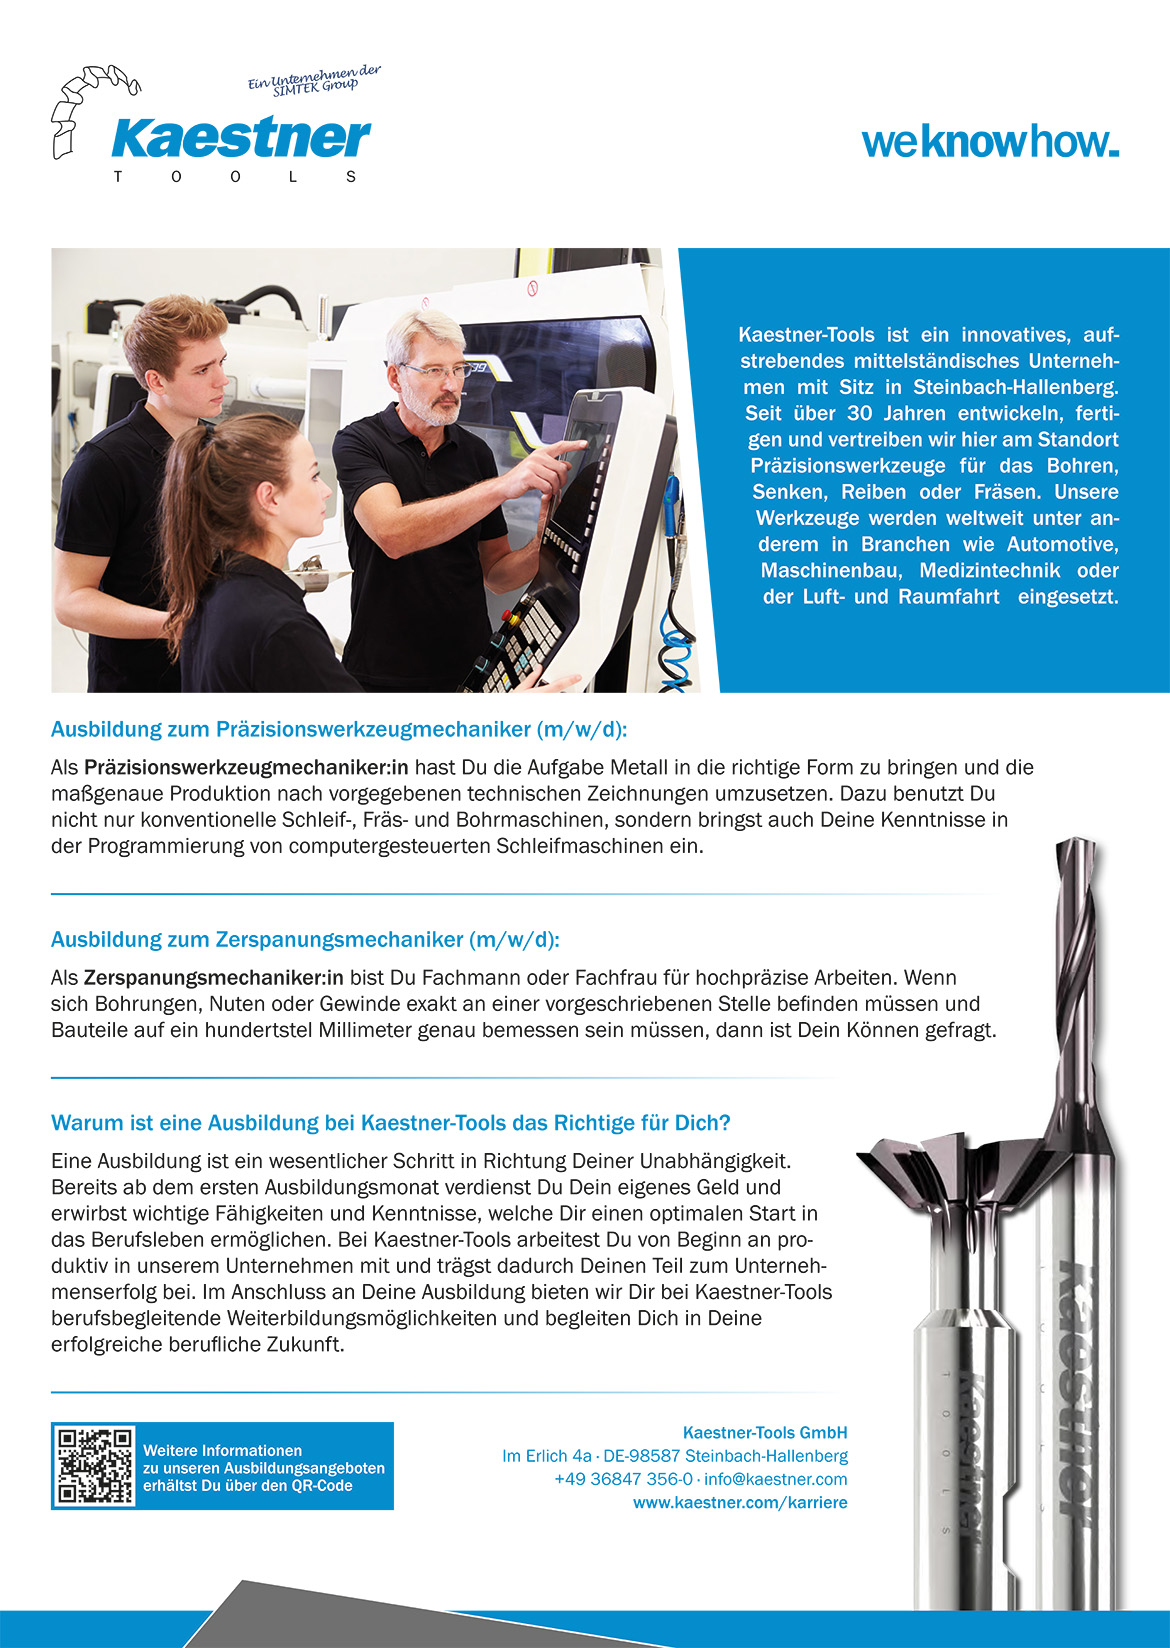 Ausbildungsplakat: Kaestner-Tools GmbH